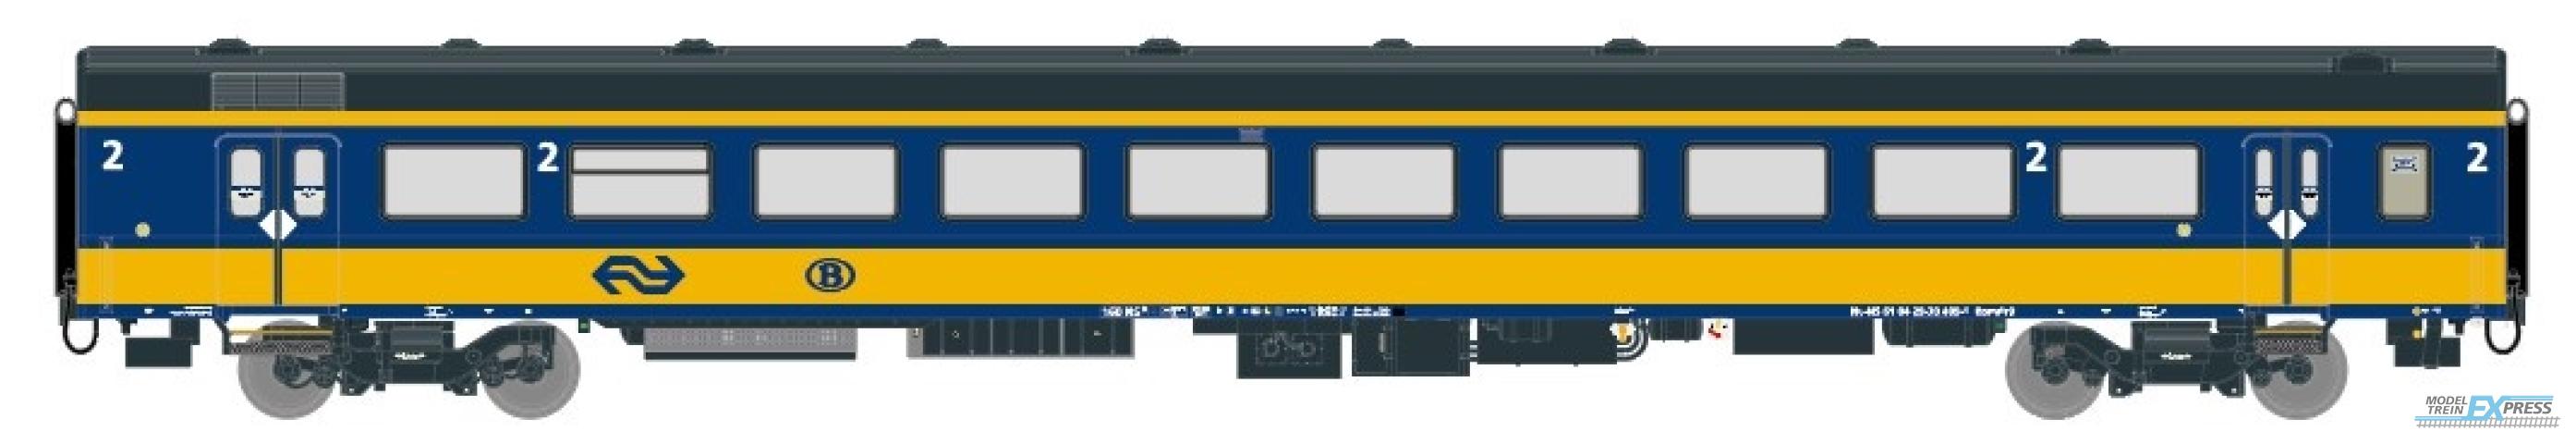 Exact-train 11026 NS ICRm Garnitur 2 (Amsterdam - Brussel) für die Hsl-Strecke eingesetzt Gepäckwagen Bpmdz9 ( Farbe Gelb / Blau), Ep. VI